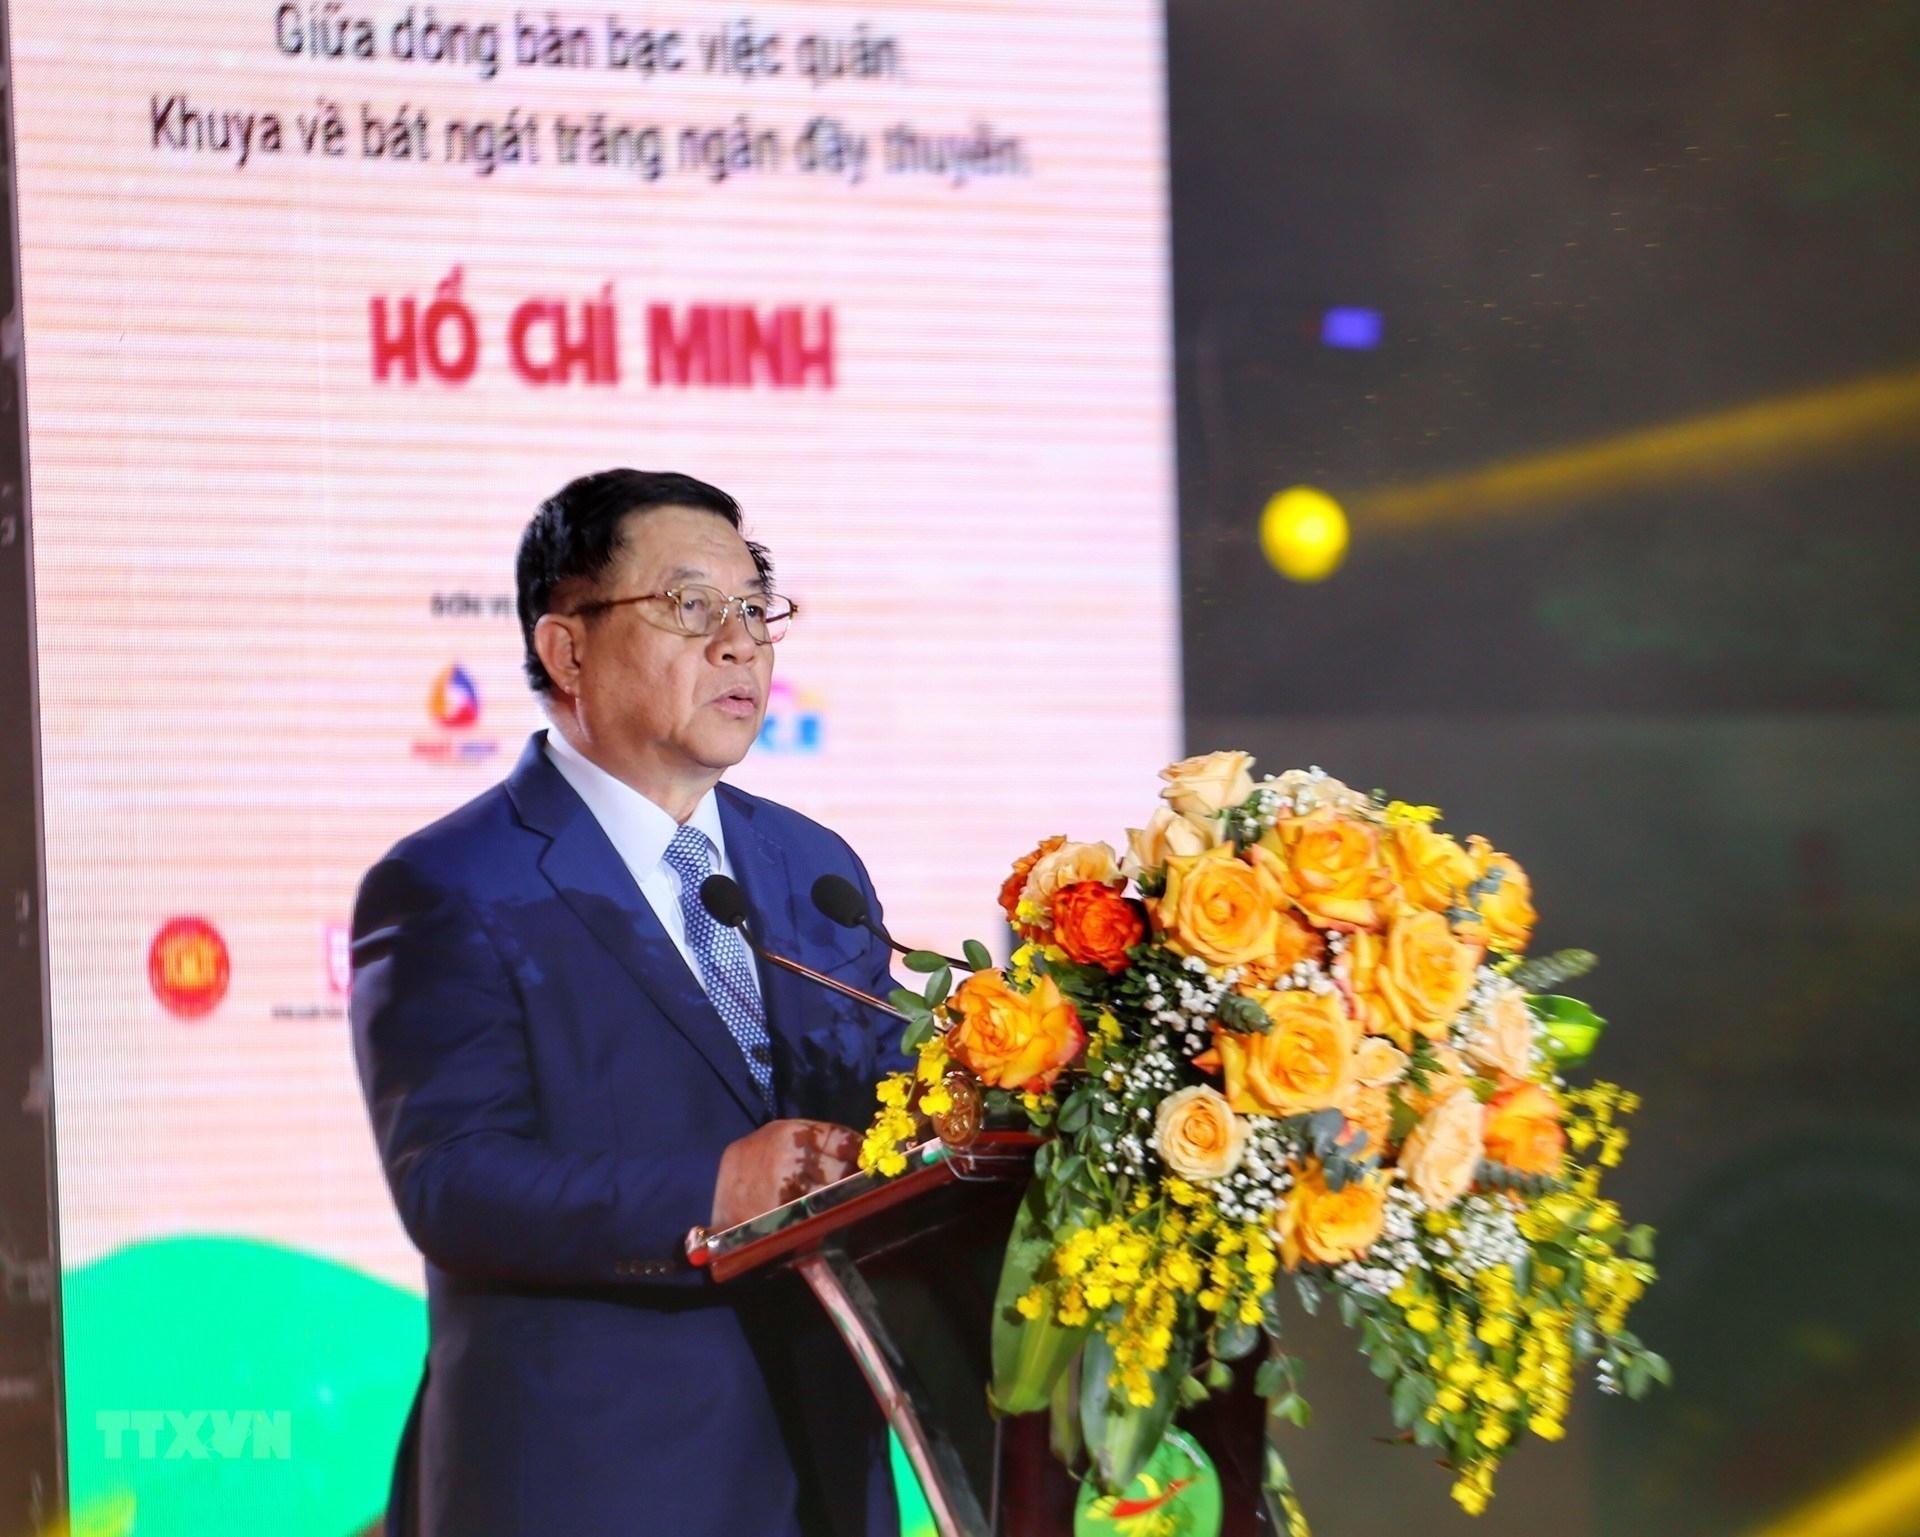 越共中央书记处书记、中央宣教部部长阮仲义出席活动、发表讲话。图自越通社